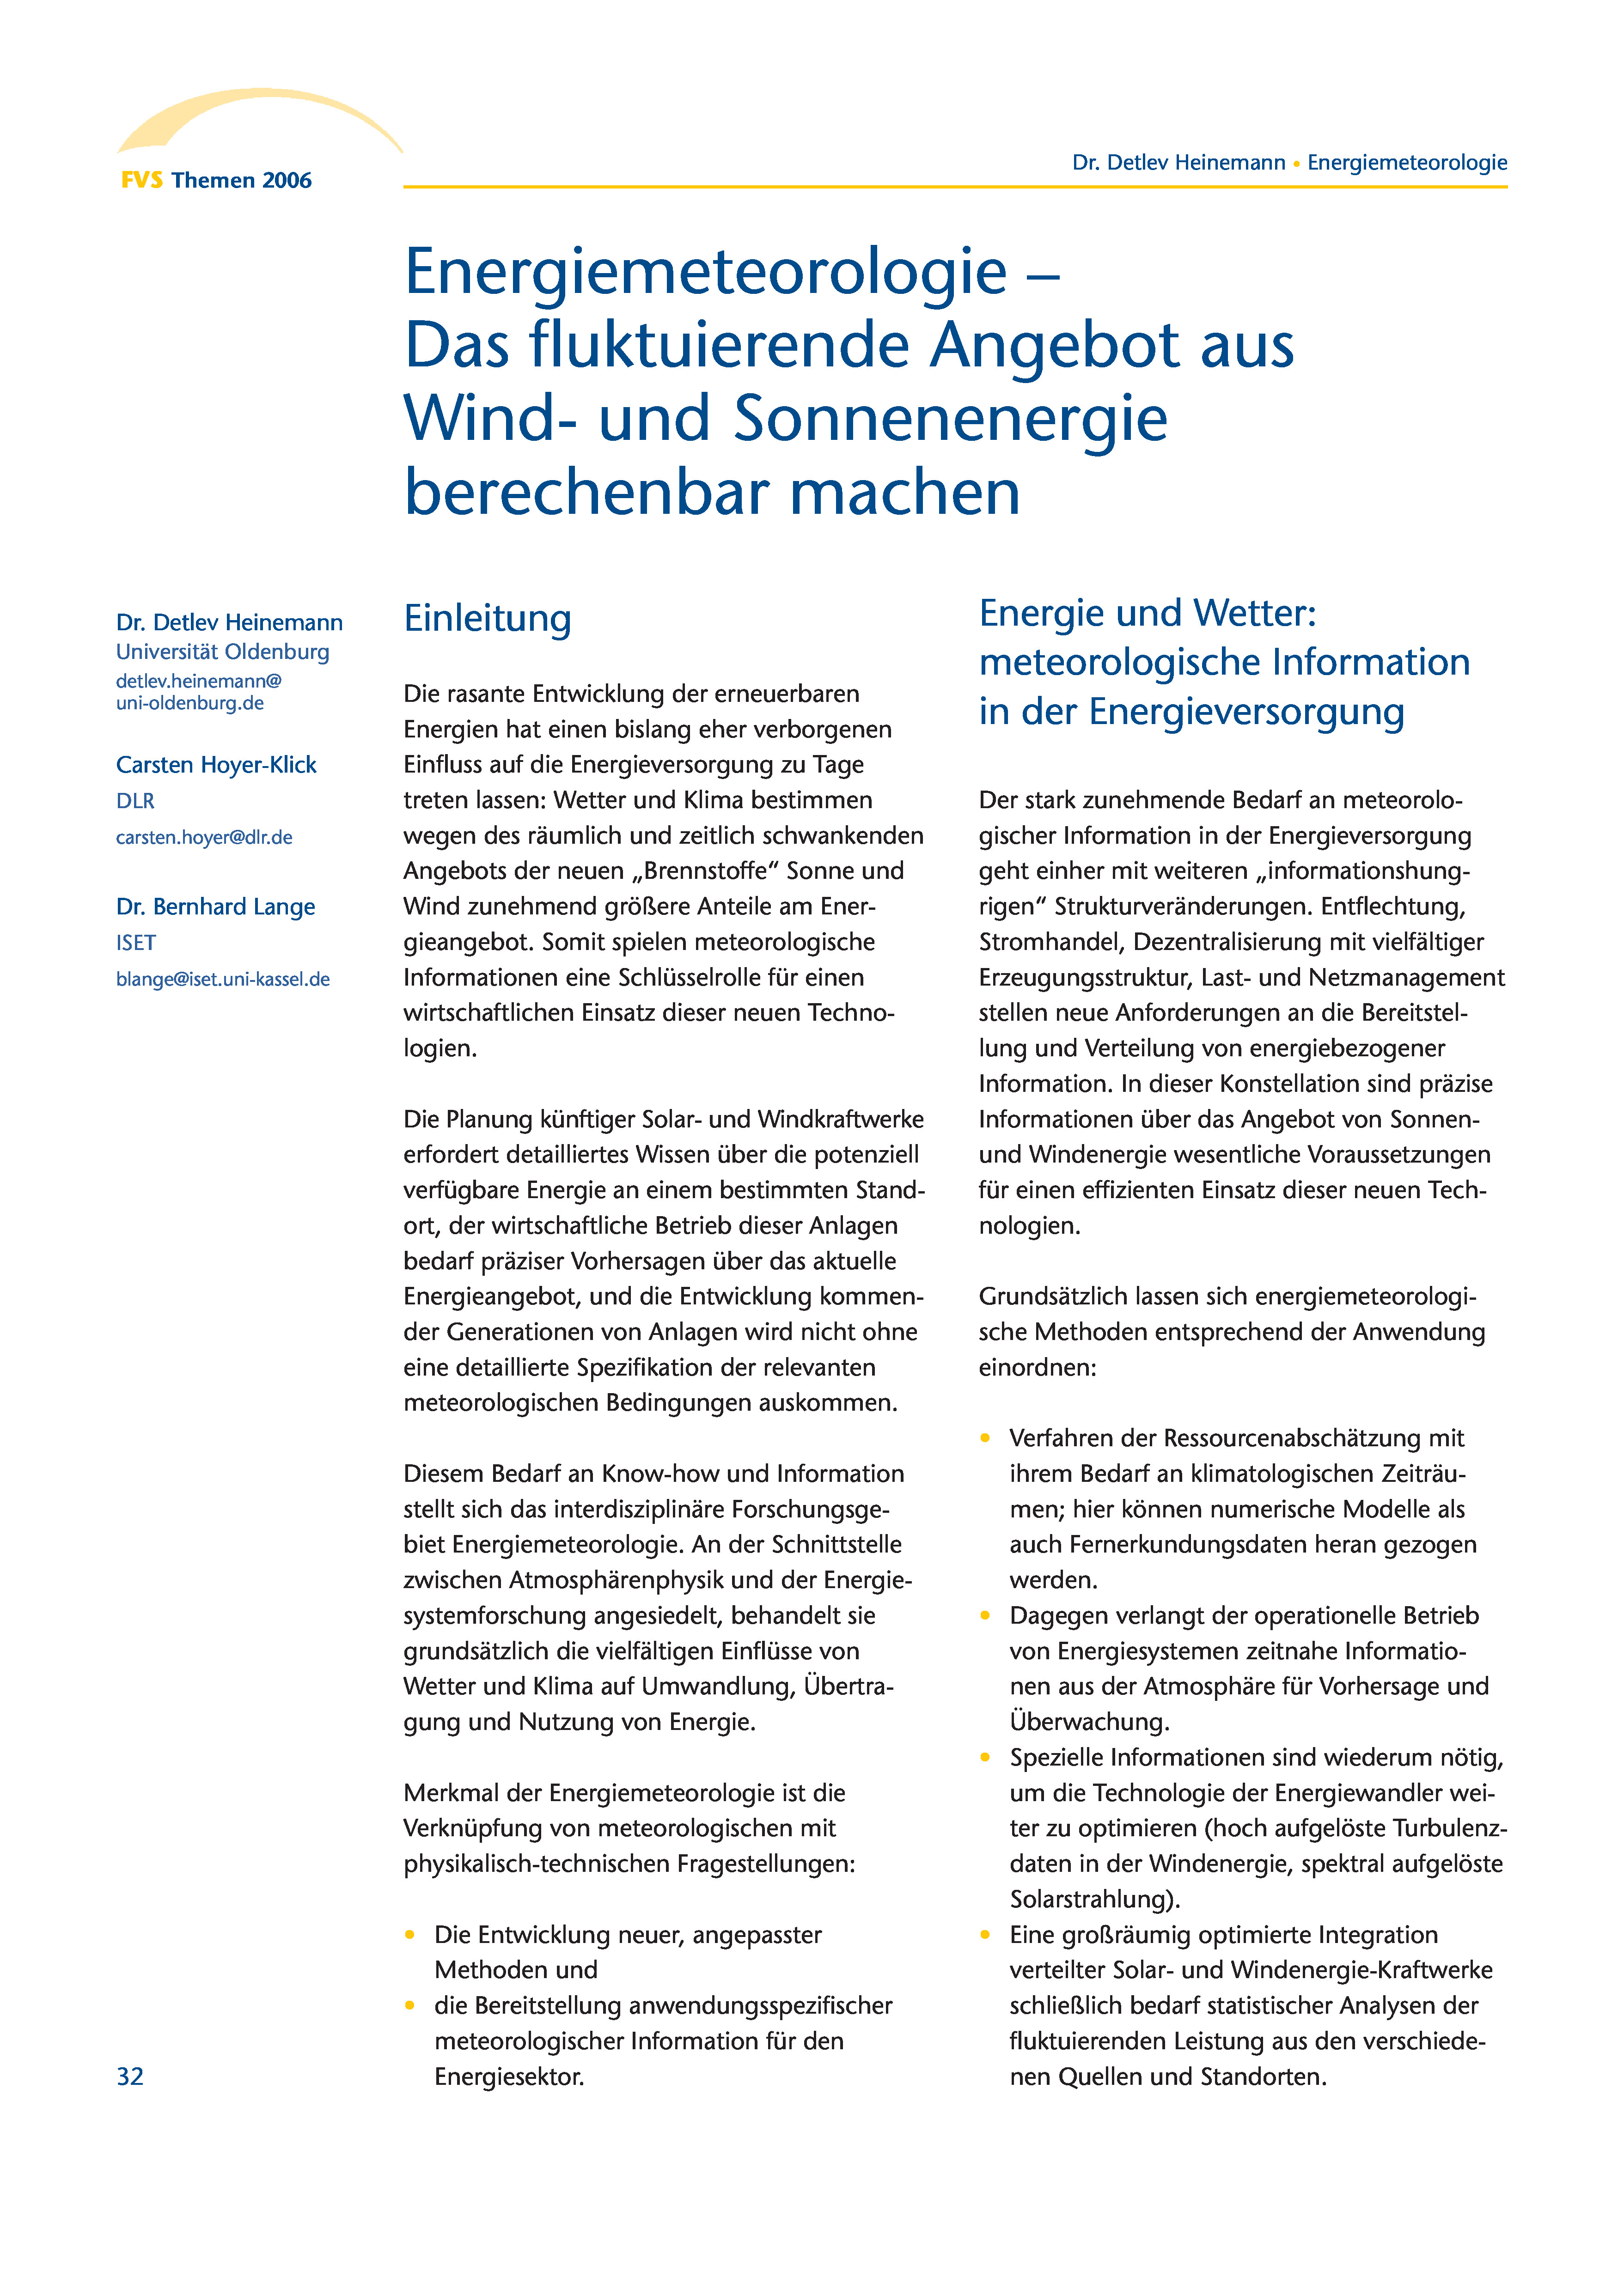 Themen 2006: Forschung und Innovation für eine nachhaltige Energieversorgung